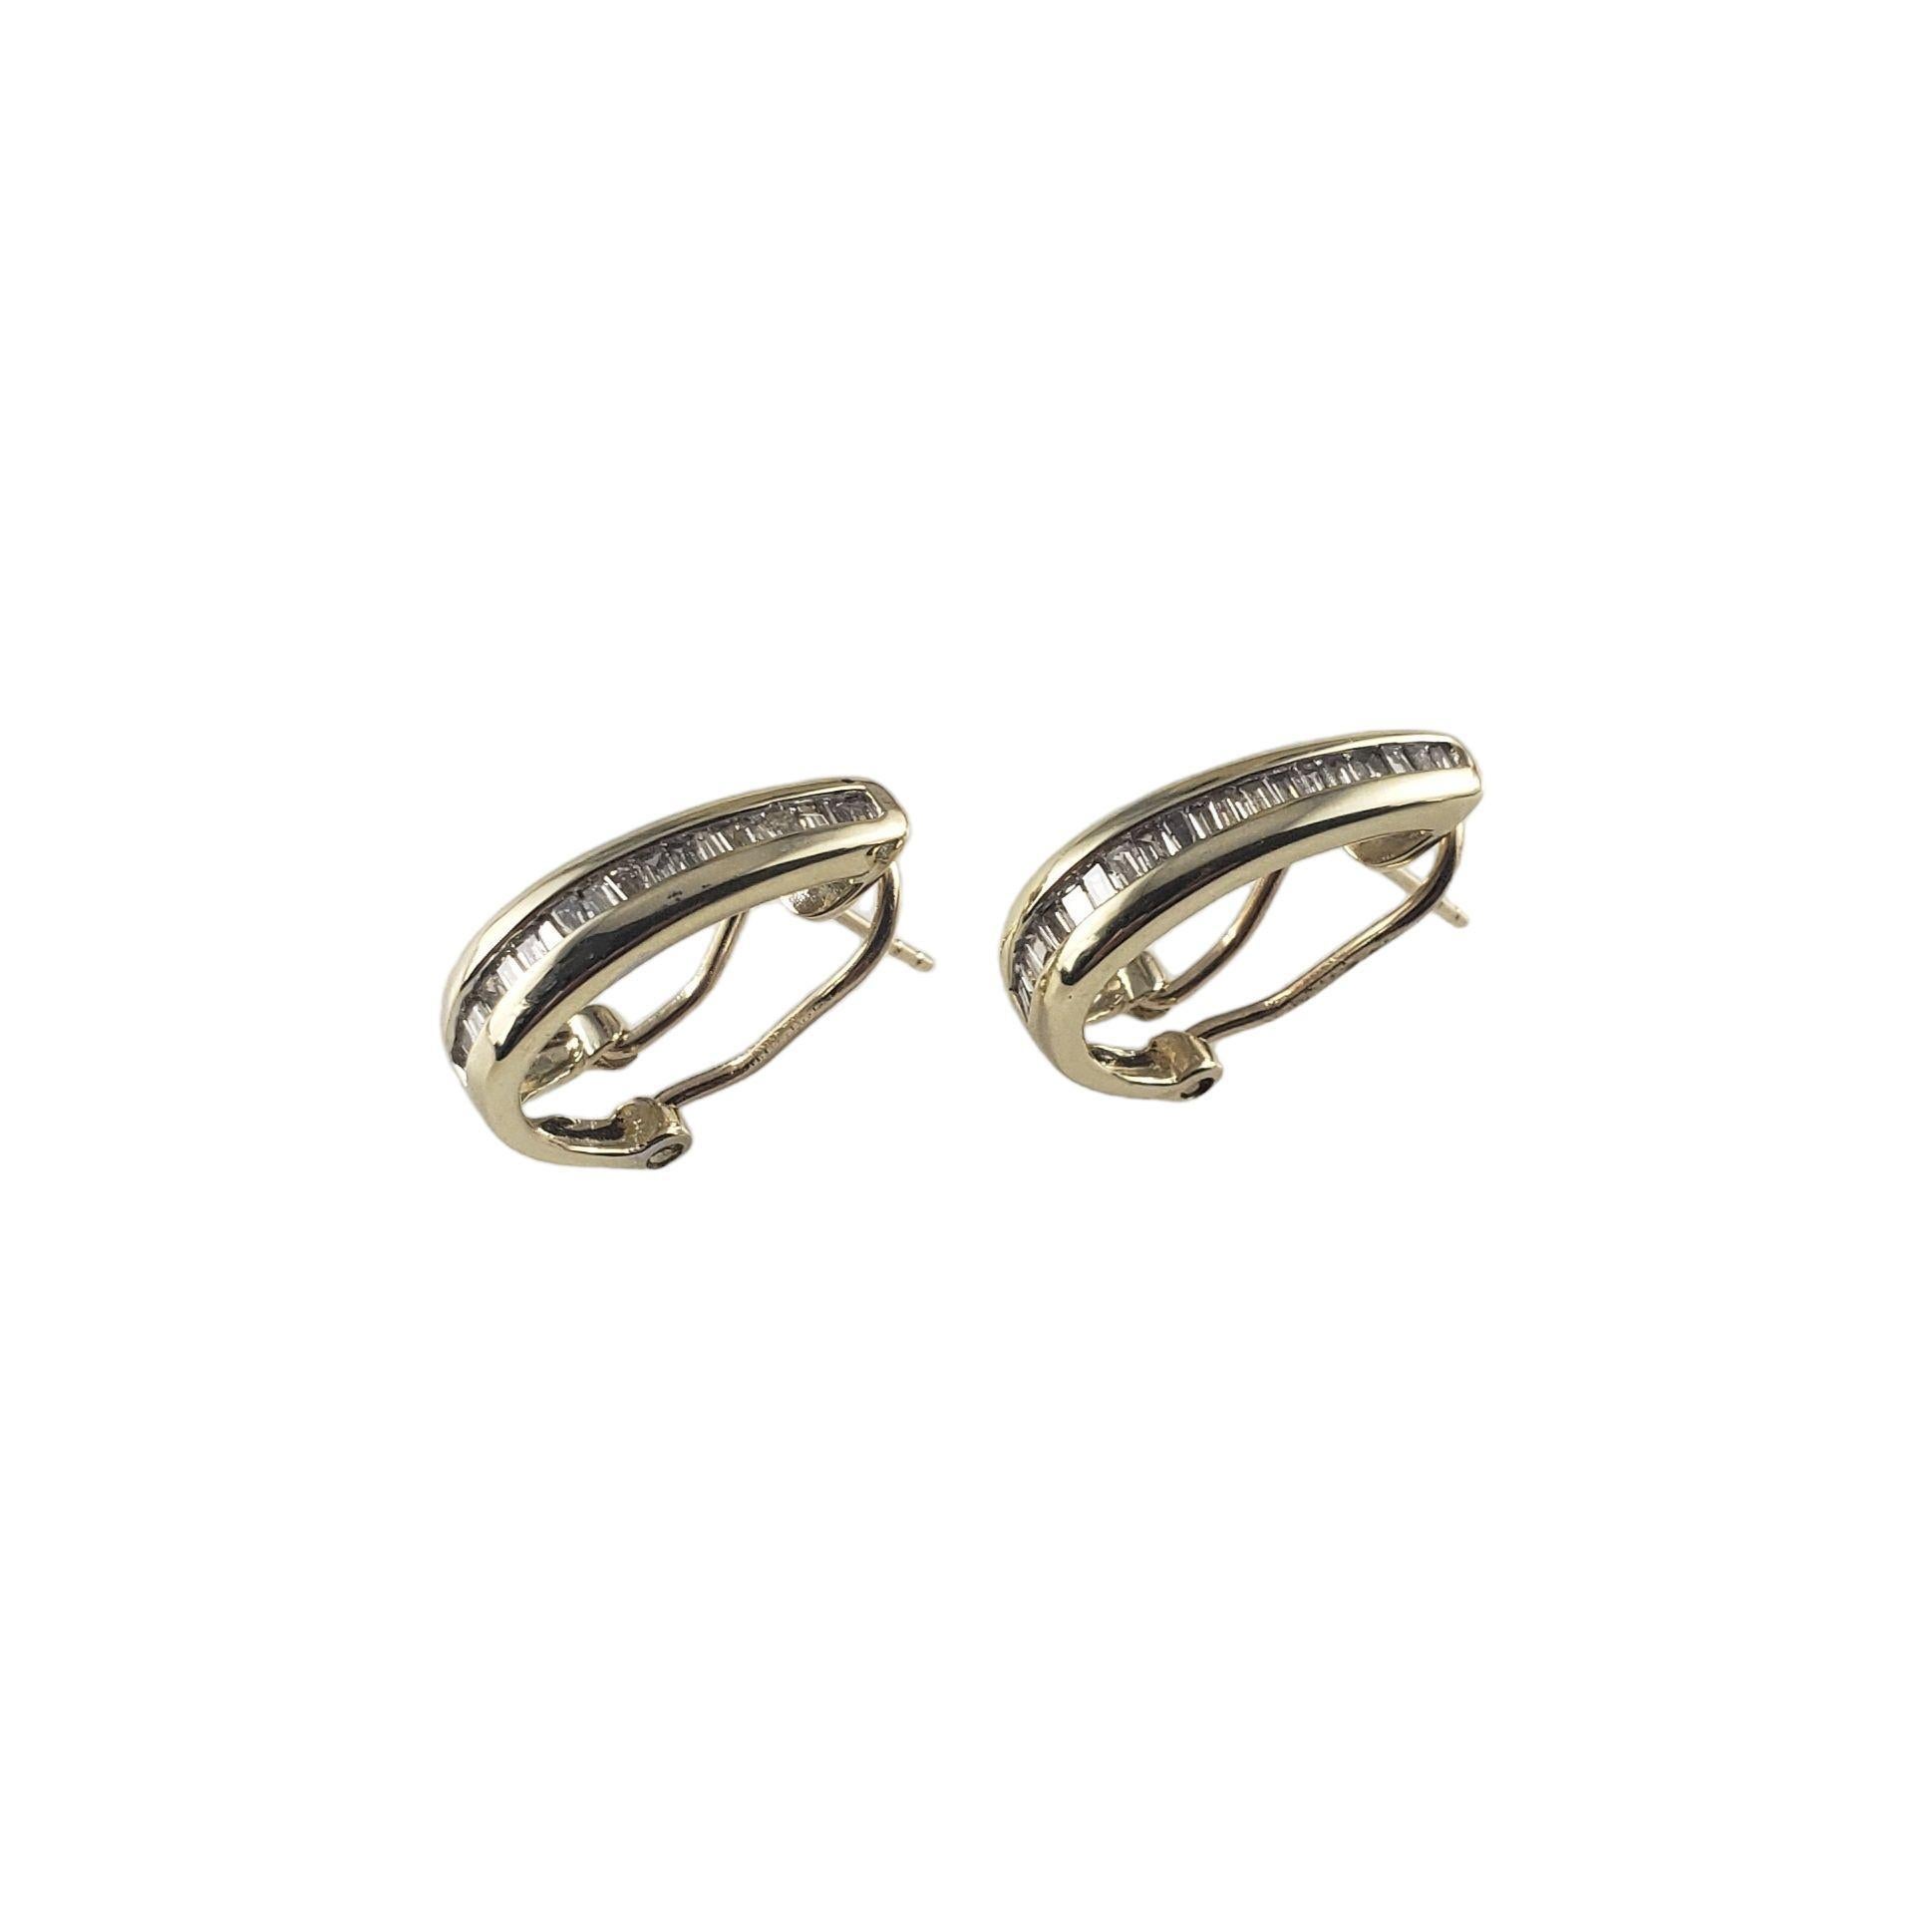 Vintage 10 Karat Gelbgold und Diamant-Ohrringe-

Diese eleganten Ohrringe sind mit je 20 Baguette-Diamanten in klassischem 10-karätigem Gelbgold gefasst. Omega-Rückenverschlüsse.  

Ungefähres Gesamtgewicht der Diamanten: 0,60 ct.

Reinheit des